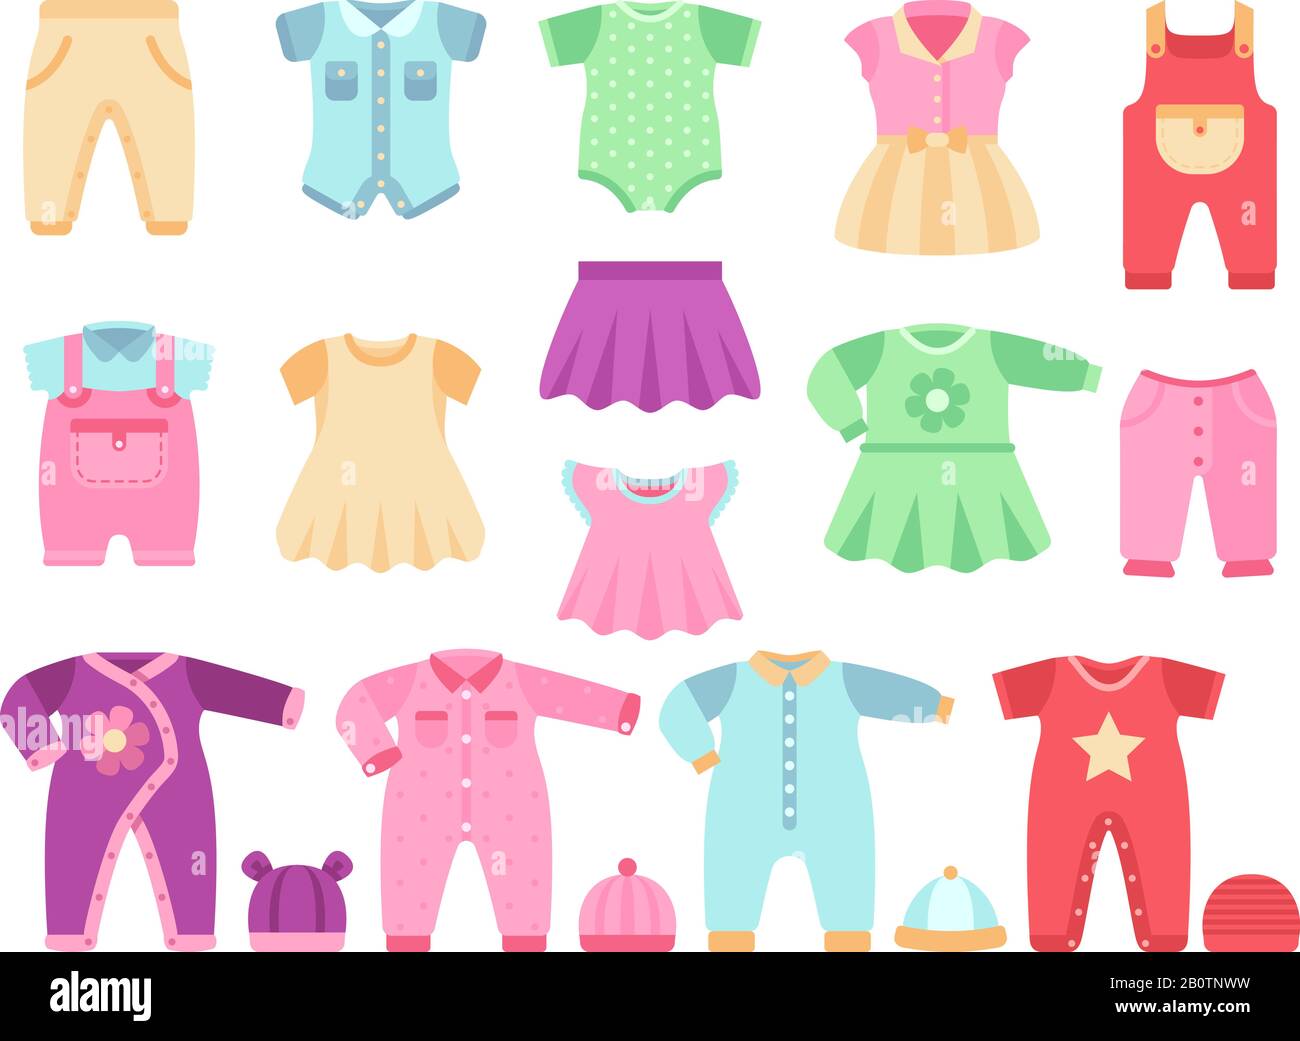 Buntes Baby Mädchen Kleidung Vektor Set. Stoff für kleine Mädchen Babyillustration Stock Vektor